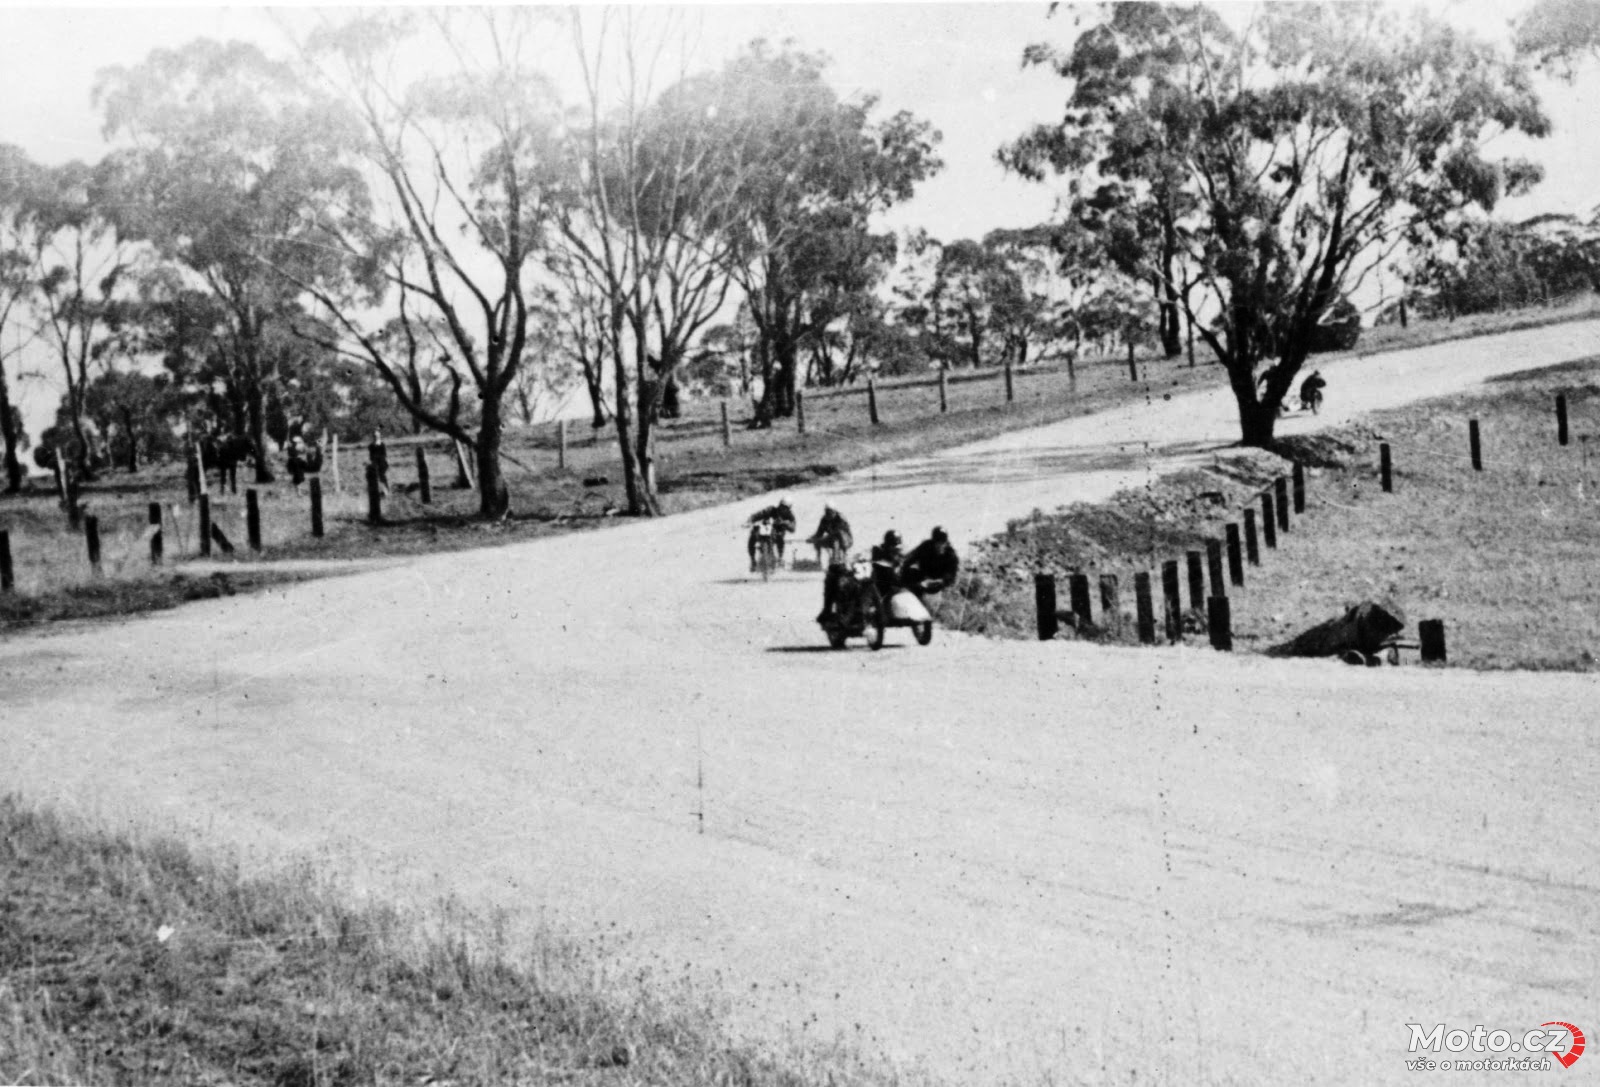 005 - Bathurst Australia GP - 1939